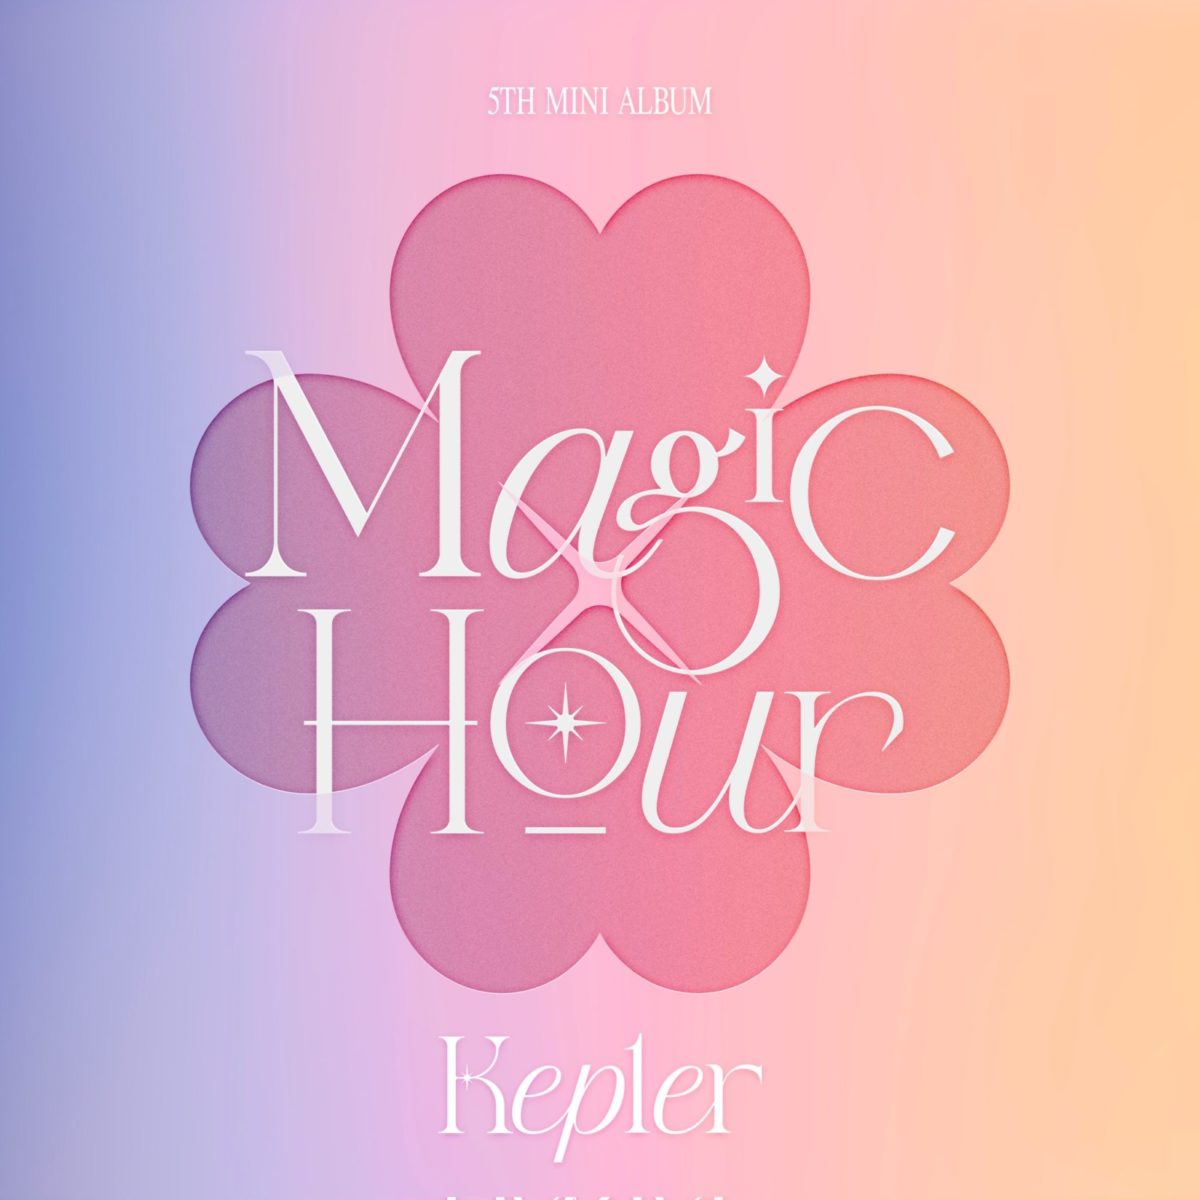 Kep1er (ケプラー)
Kep1er 5th Mini Album 「Magic Hour」
Kep1er 「Galileo」

YUJIN (ユジン)
XIAOTING (シャオティン)
MASHIRO (マシロ)
CHAEHYUN (チェヒョン)
DAYEON (ダヨン)
HIKARU (ヒカル)
HUENING BAHIYYIH (ヒュニンバヒエ)
YOUNGEUN (ヨンウン)
YESEO (イェソ)